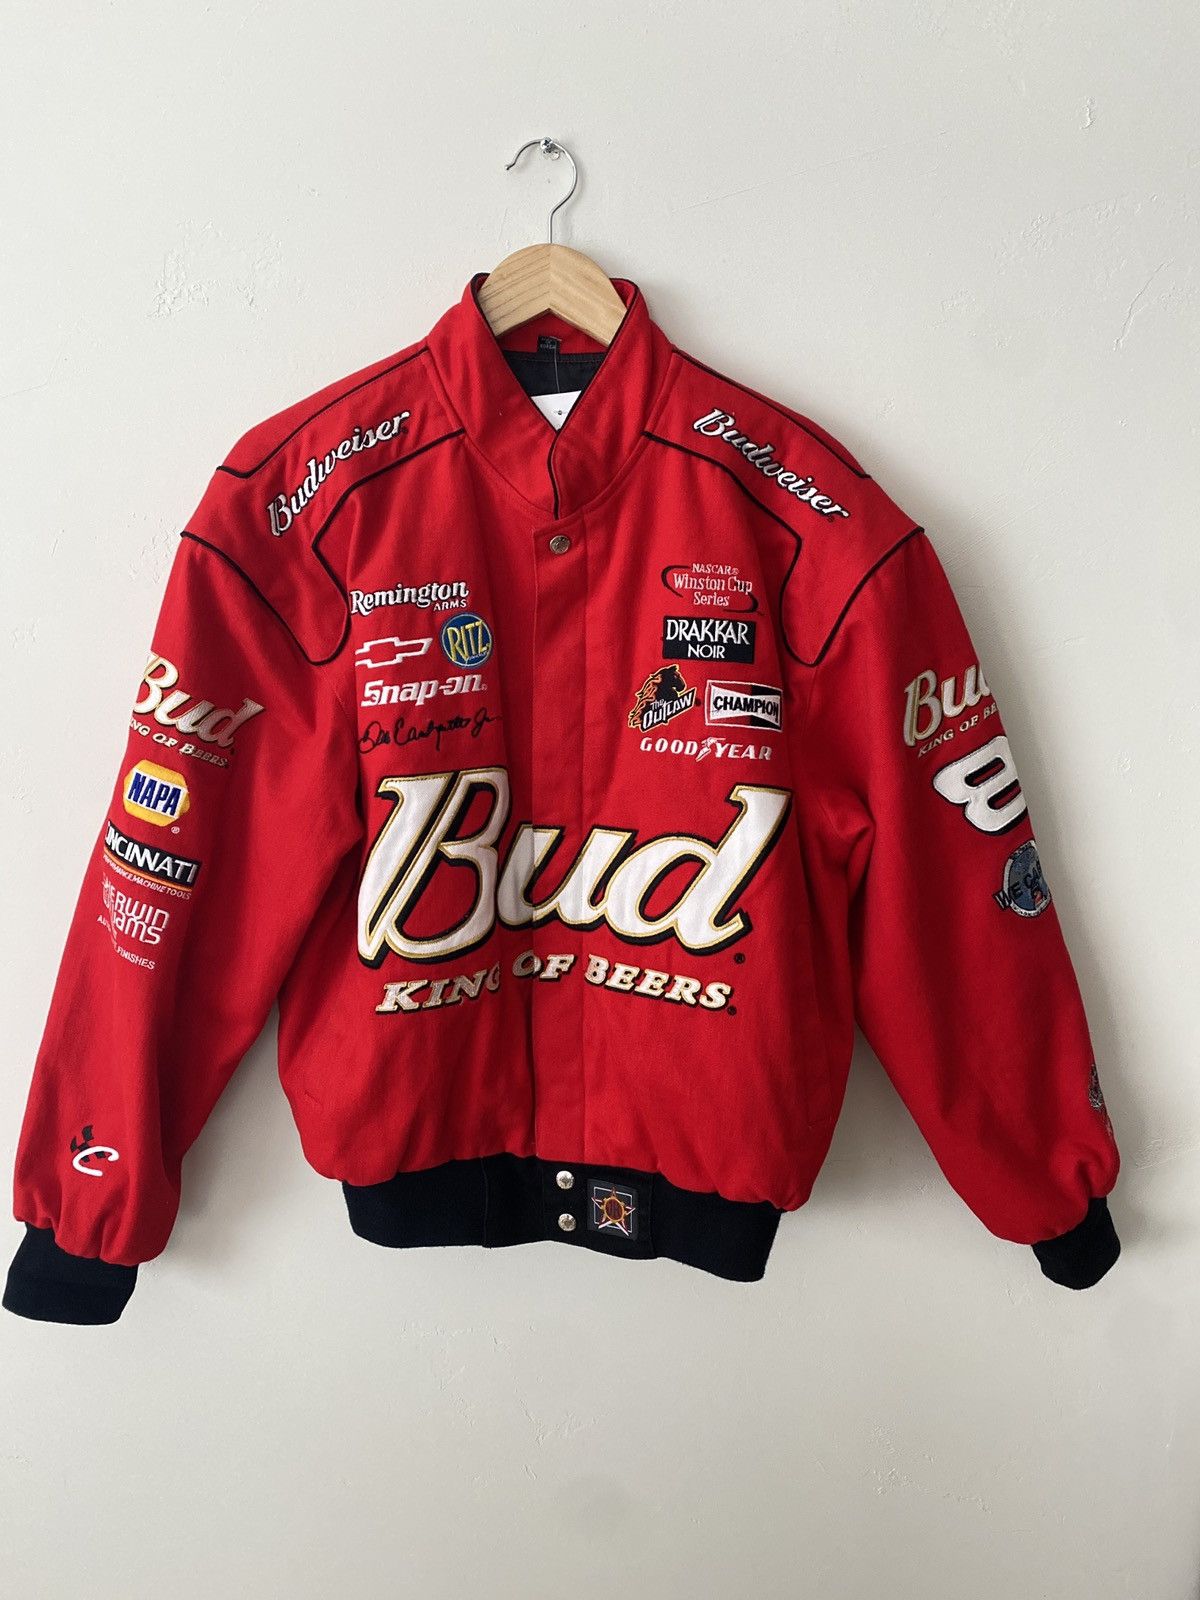 Vintage Vintage Bud King Of Beers Racing Jacket Brand New No Wear | Grailed